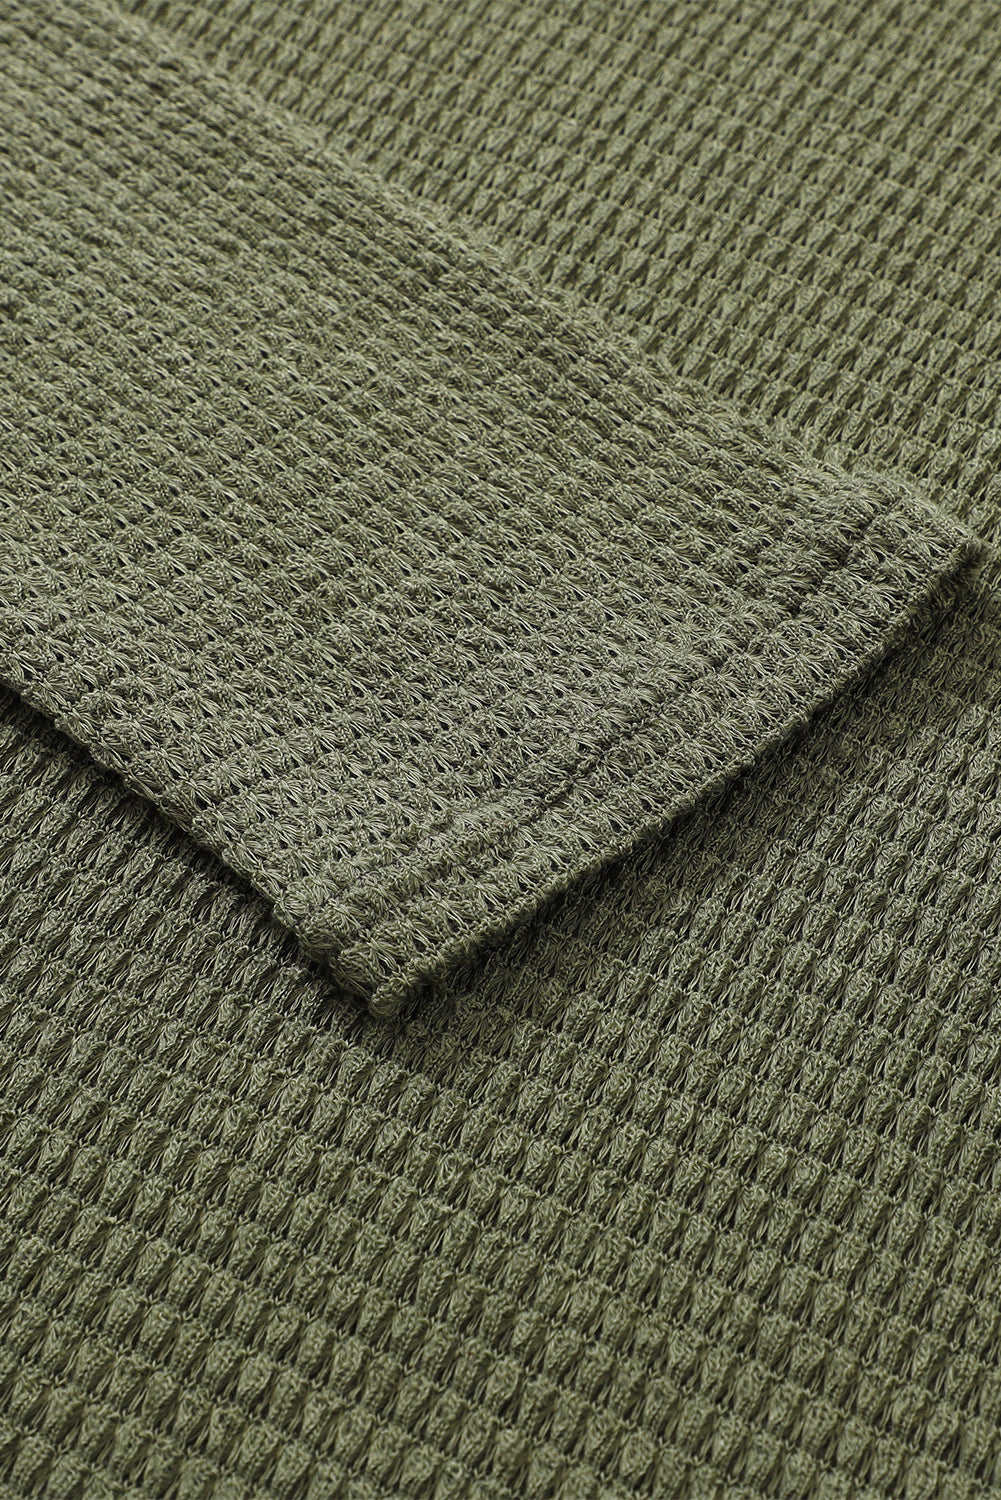 Haut oversize gris en tricot gaufré à fentes hautes